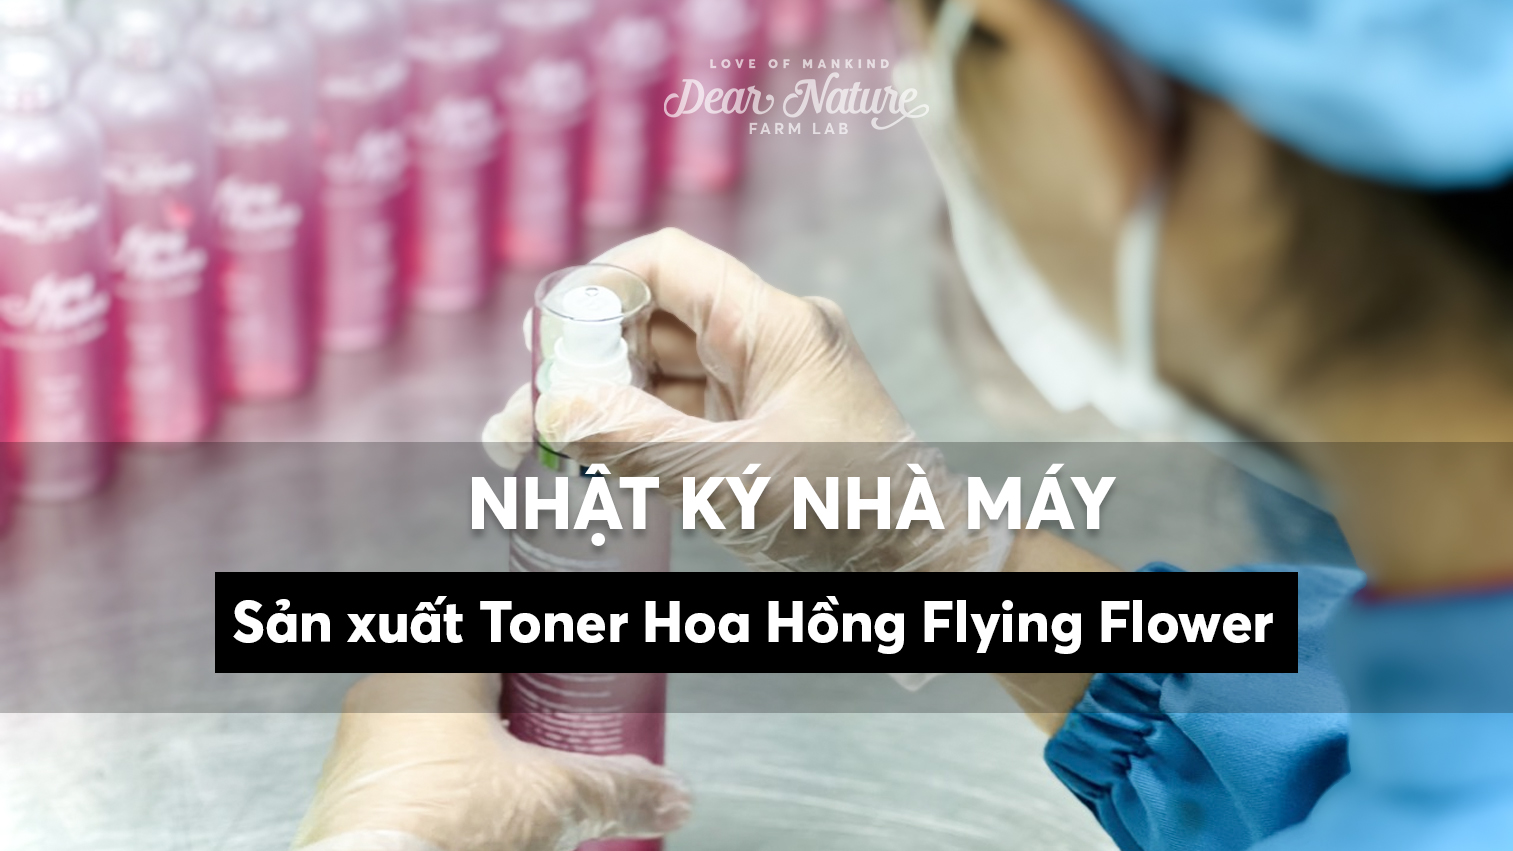 Cập Nhật Nhà Máy: Sản xuất Toner Hoa Hồng Flying Flower